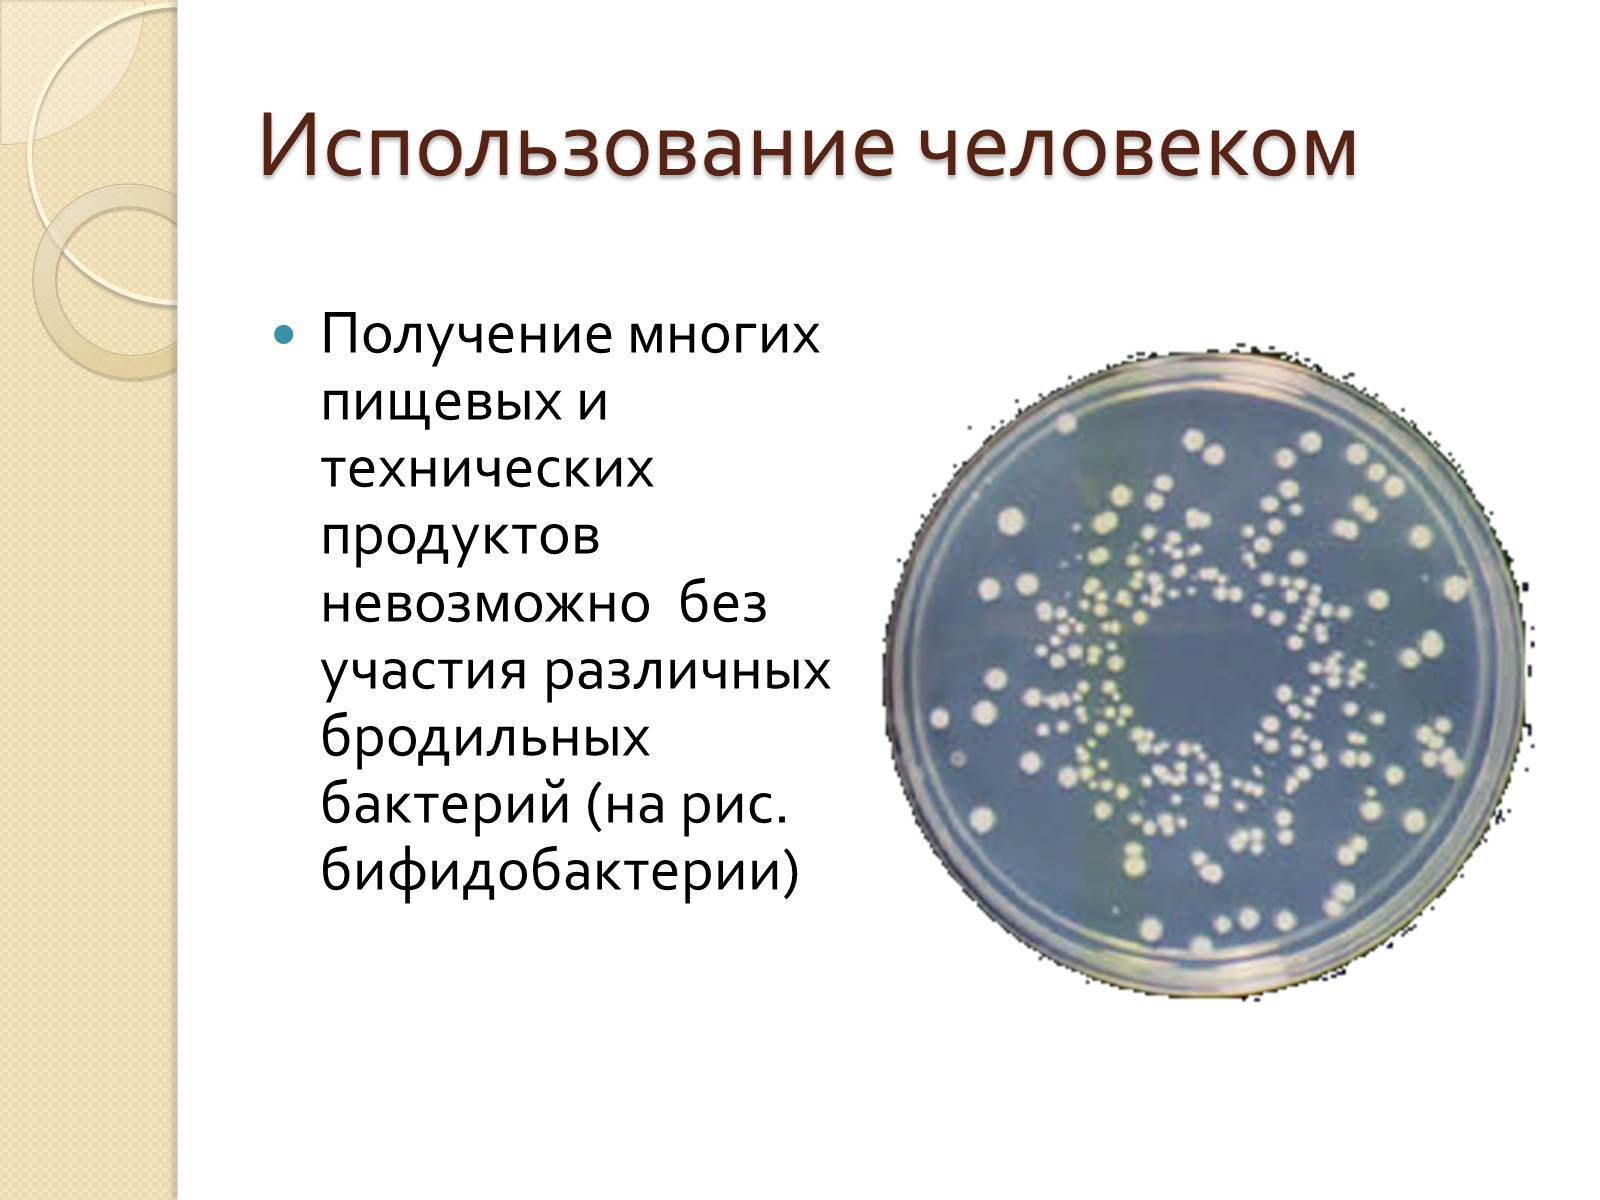 Значение прокариот. Роль прокариот. Роль прокариот в природе. Значение прокариот в жизни человека. Бактерии прокариоты.